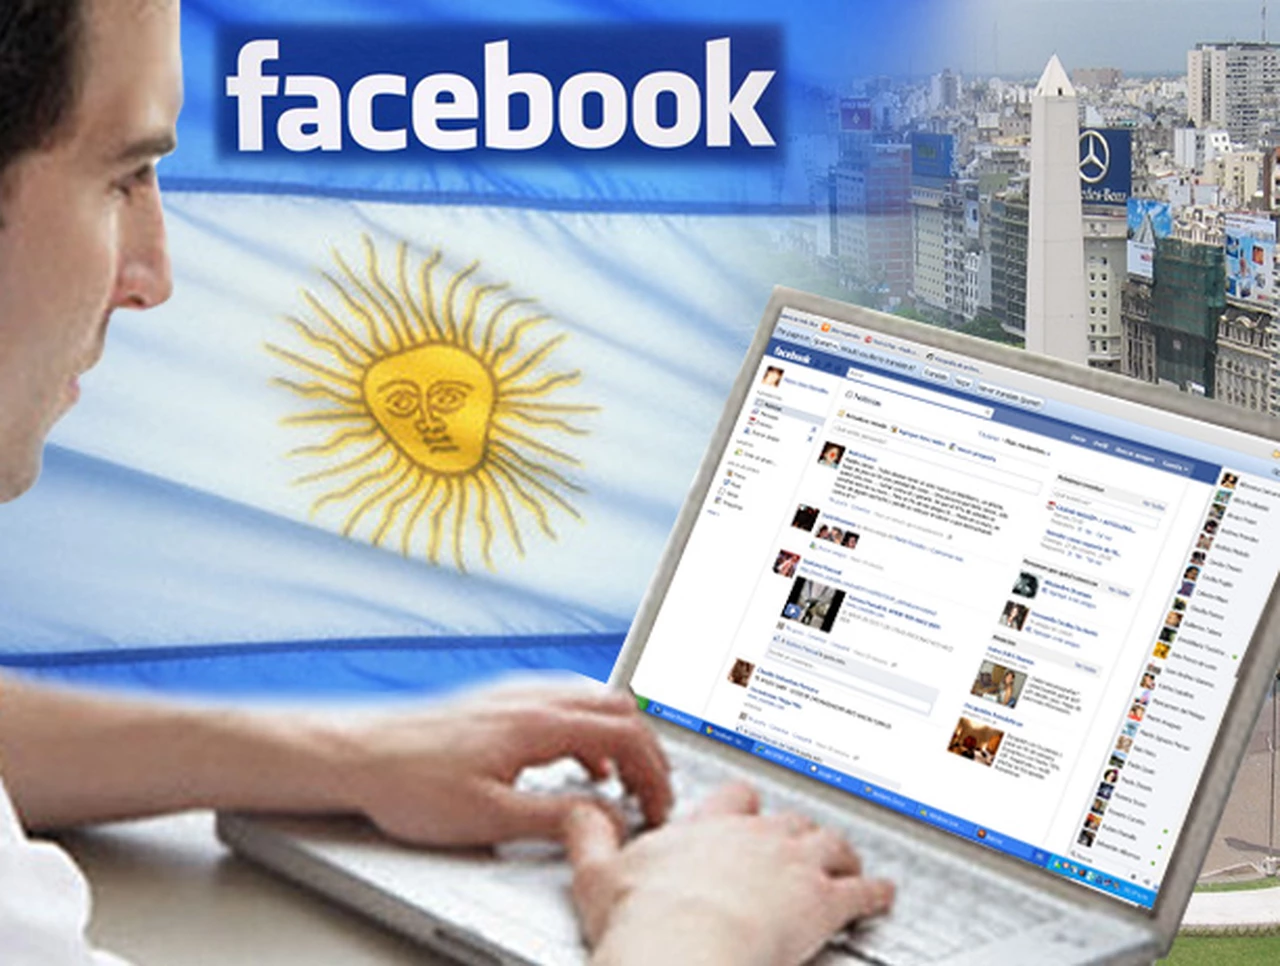 Facebook ya tiene su razón social en Argentina y ahora usuarios podrán reclamar "más fácil" por sus derechos